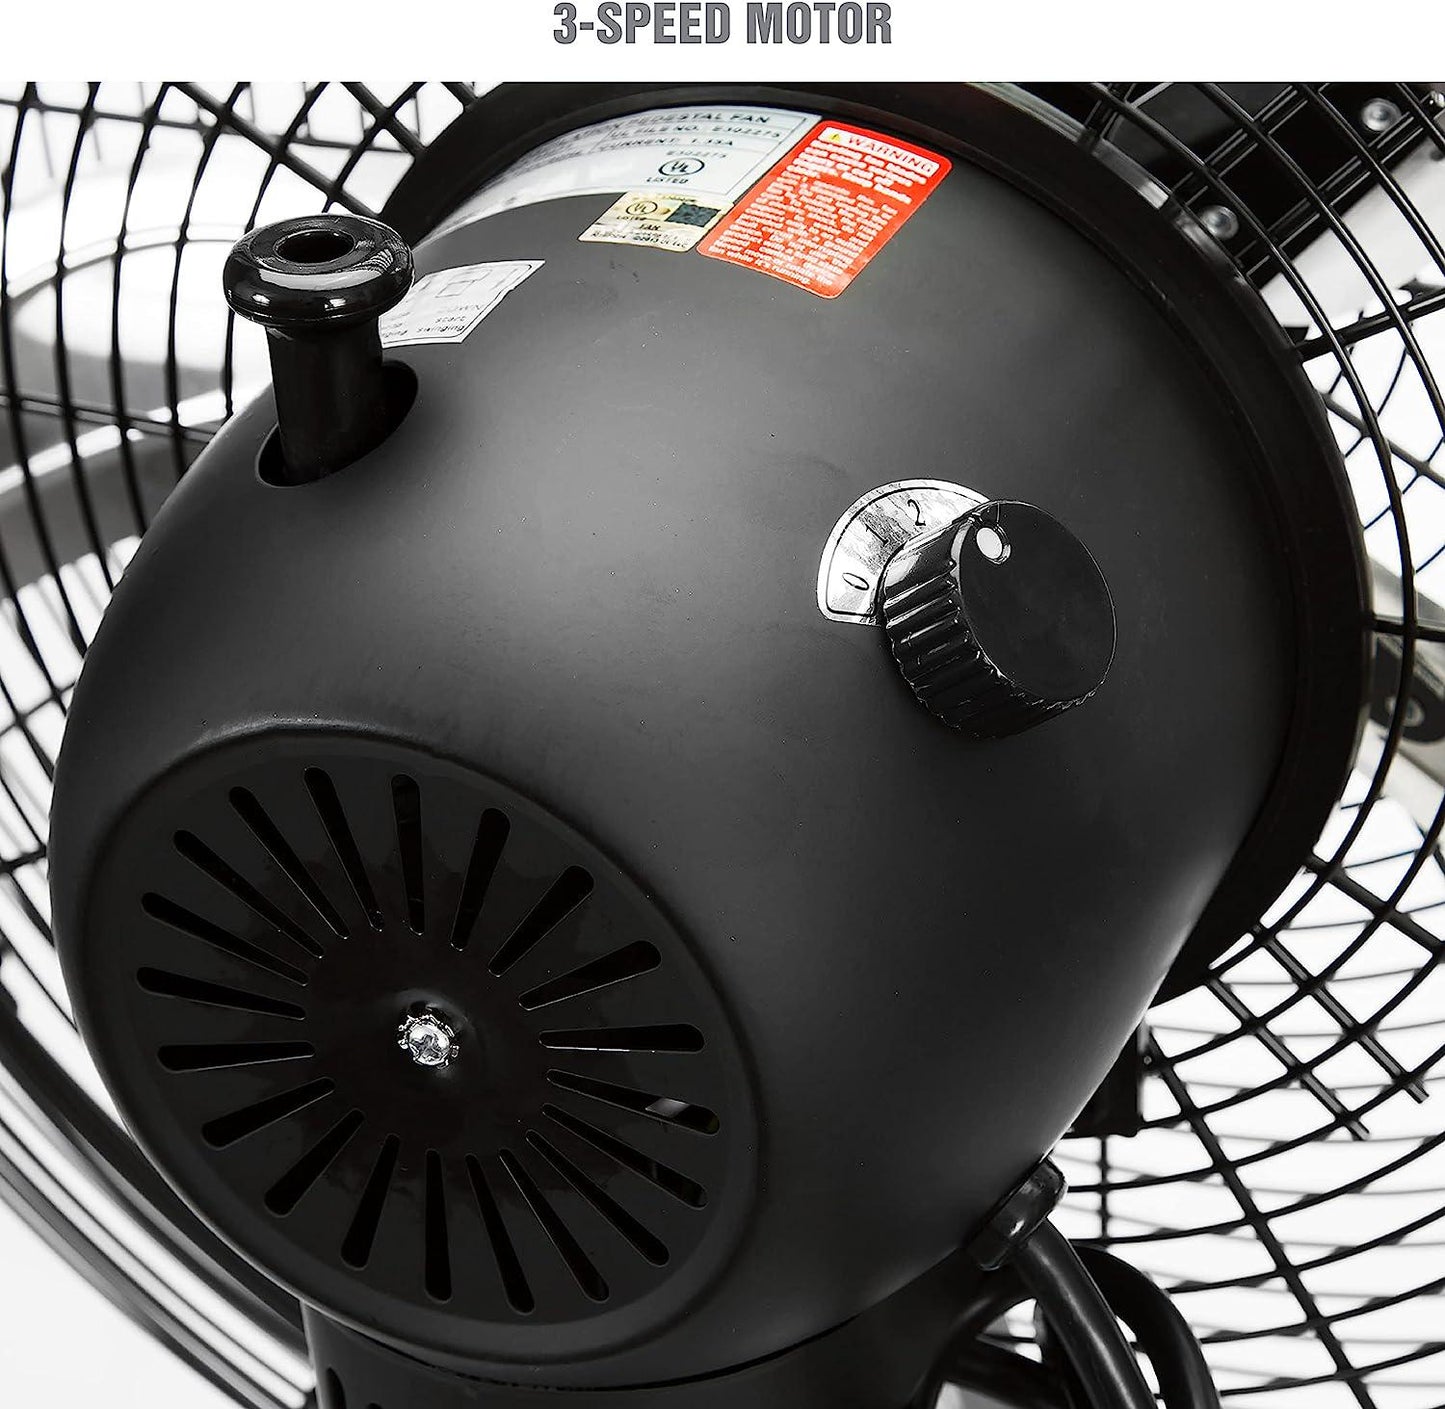 OEM24871 20 Oscillating Pedestal Fan, Commercial Fan For Worksites, Industrial Fans, High Velocity Shop Fan, 20 Inch